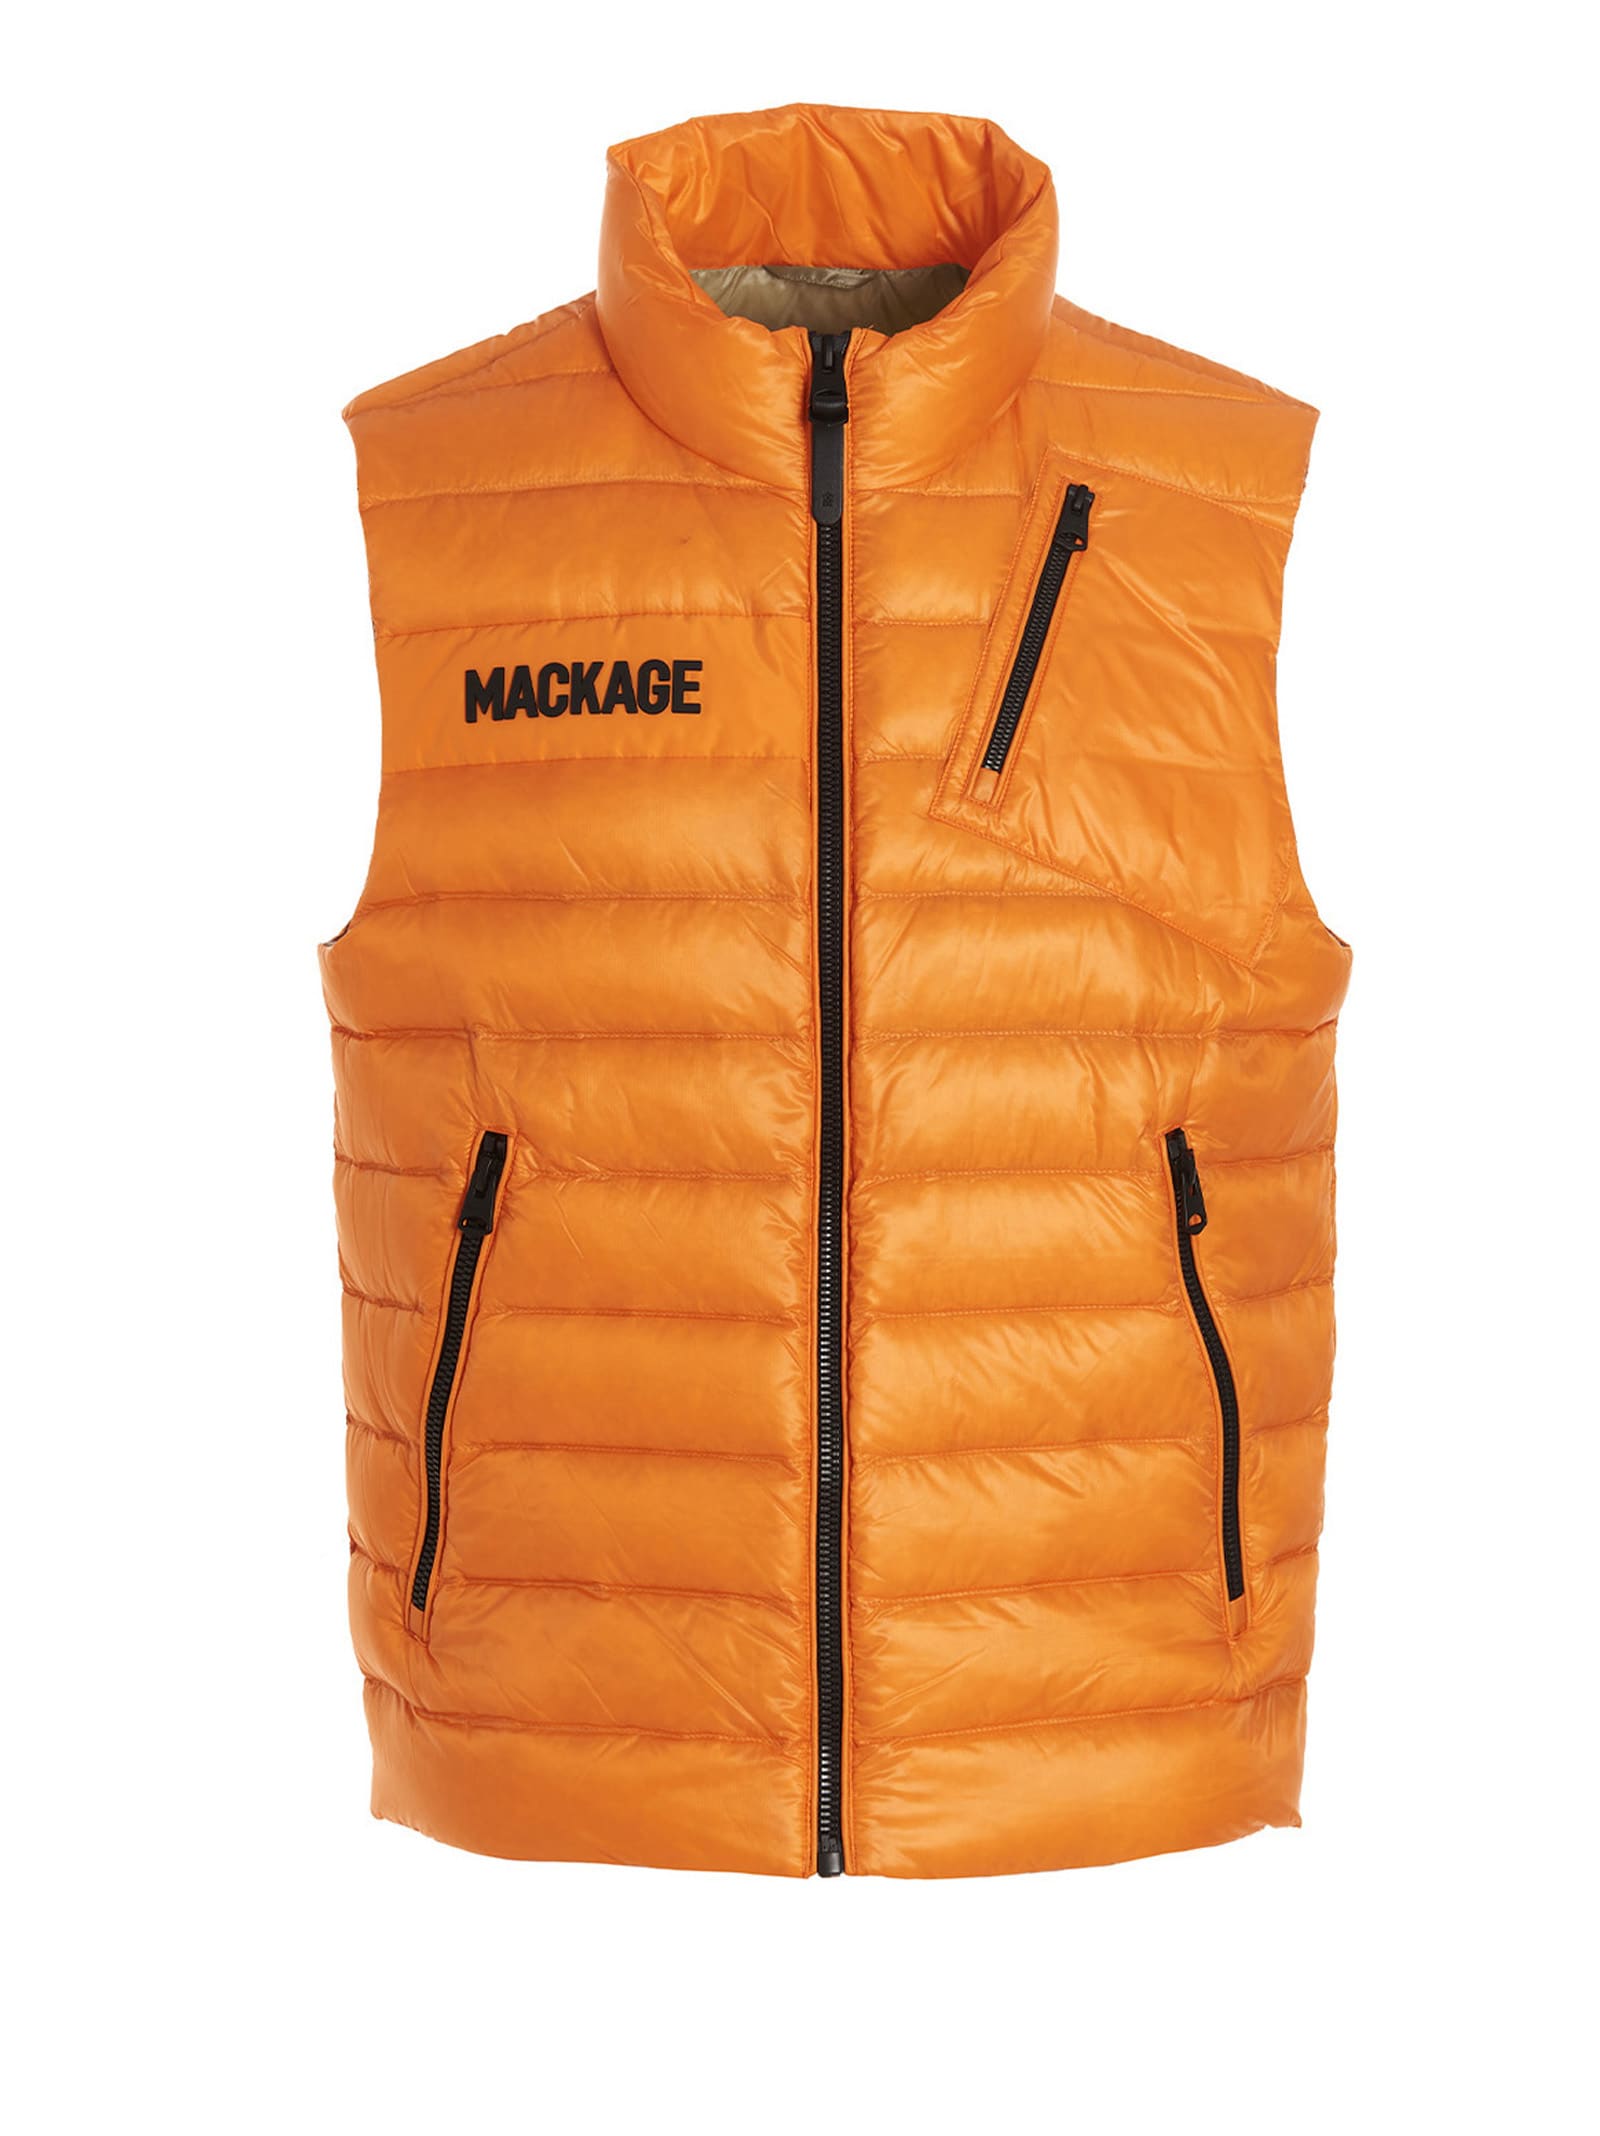 Mackage hardy Sleeveless Jacket